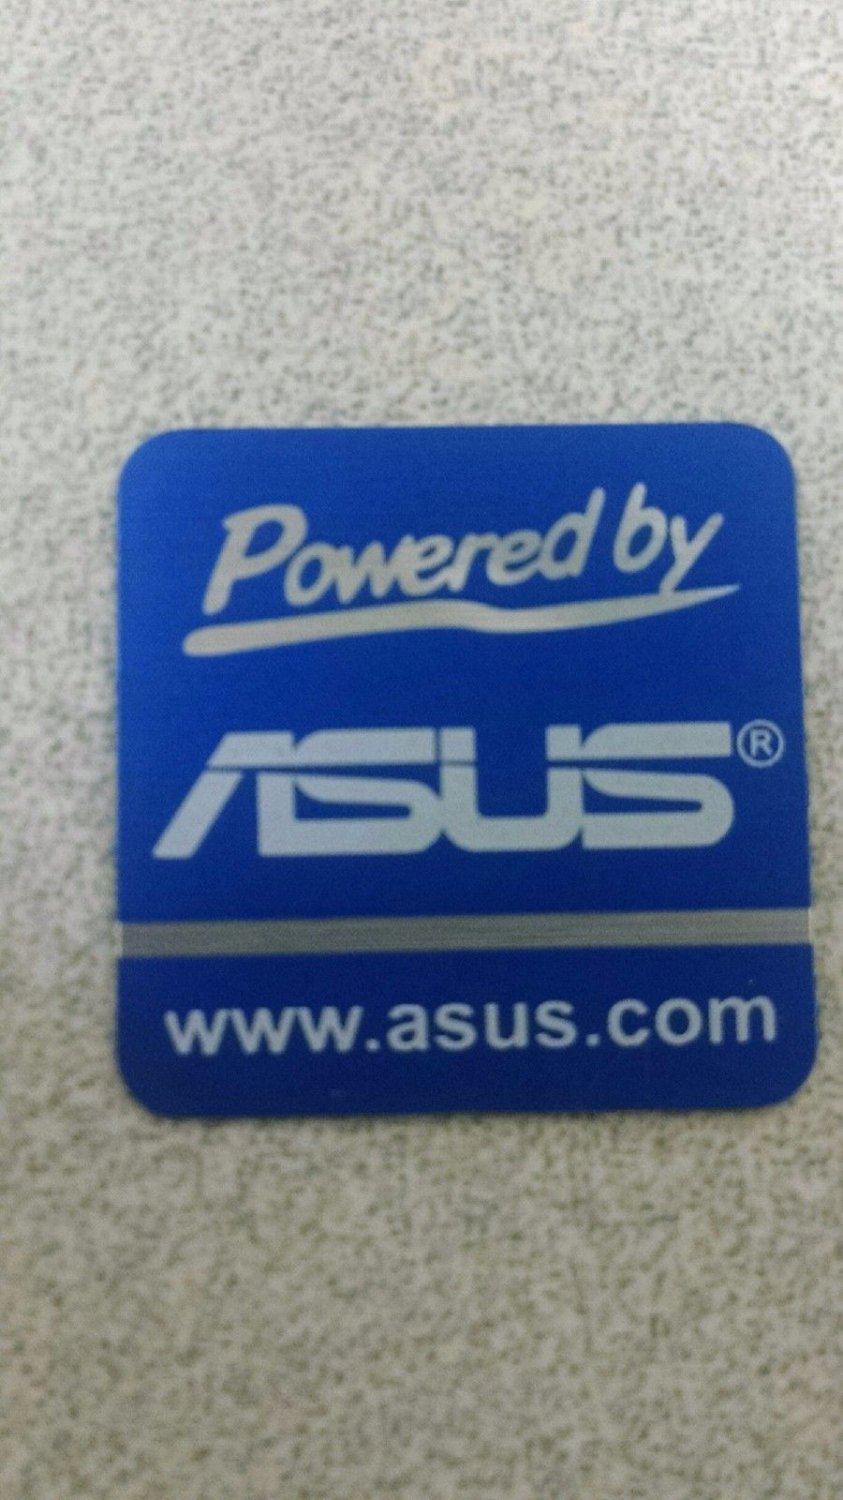 Наклейка asus. ASUS наклейка. Наклейка Powered by ASUS. Наклейка логотип асус. Наклейки на ноутбук асус.